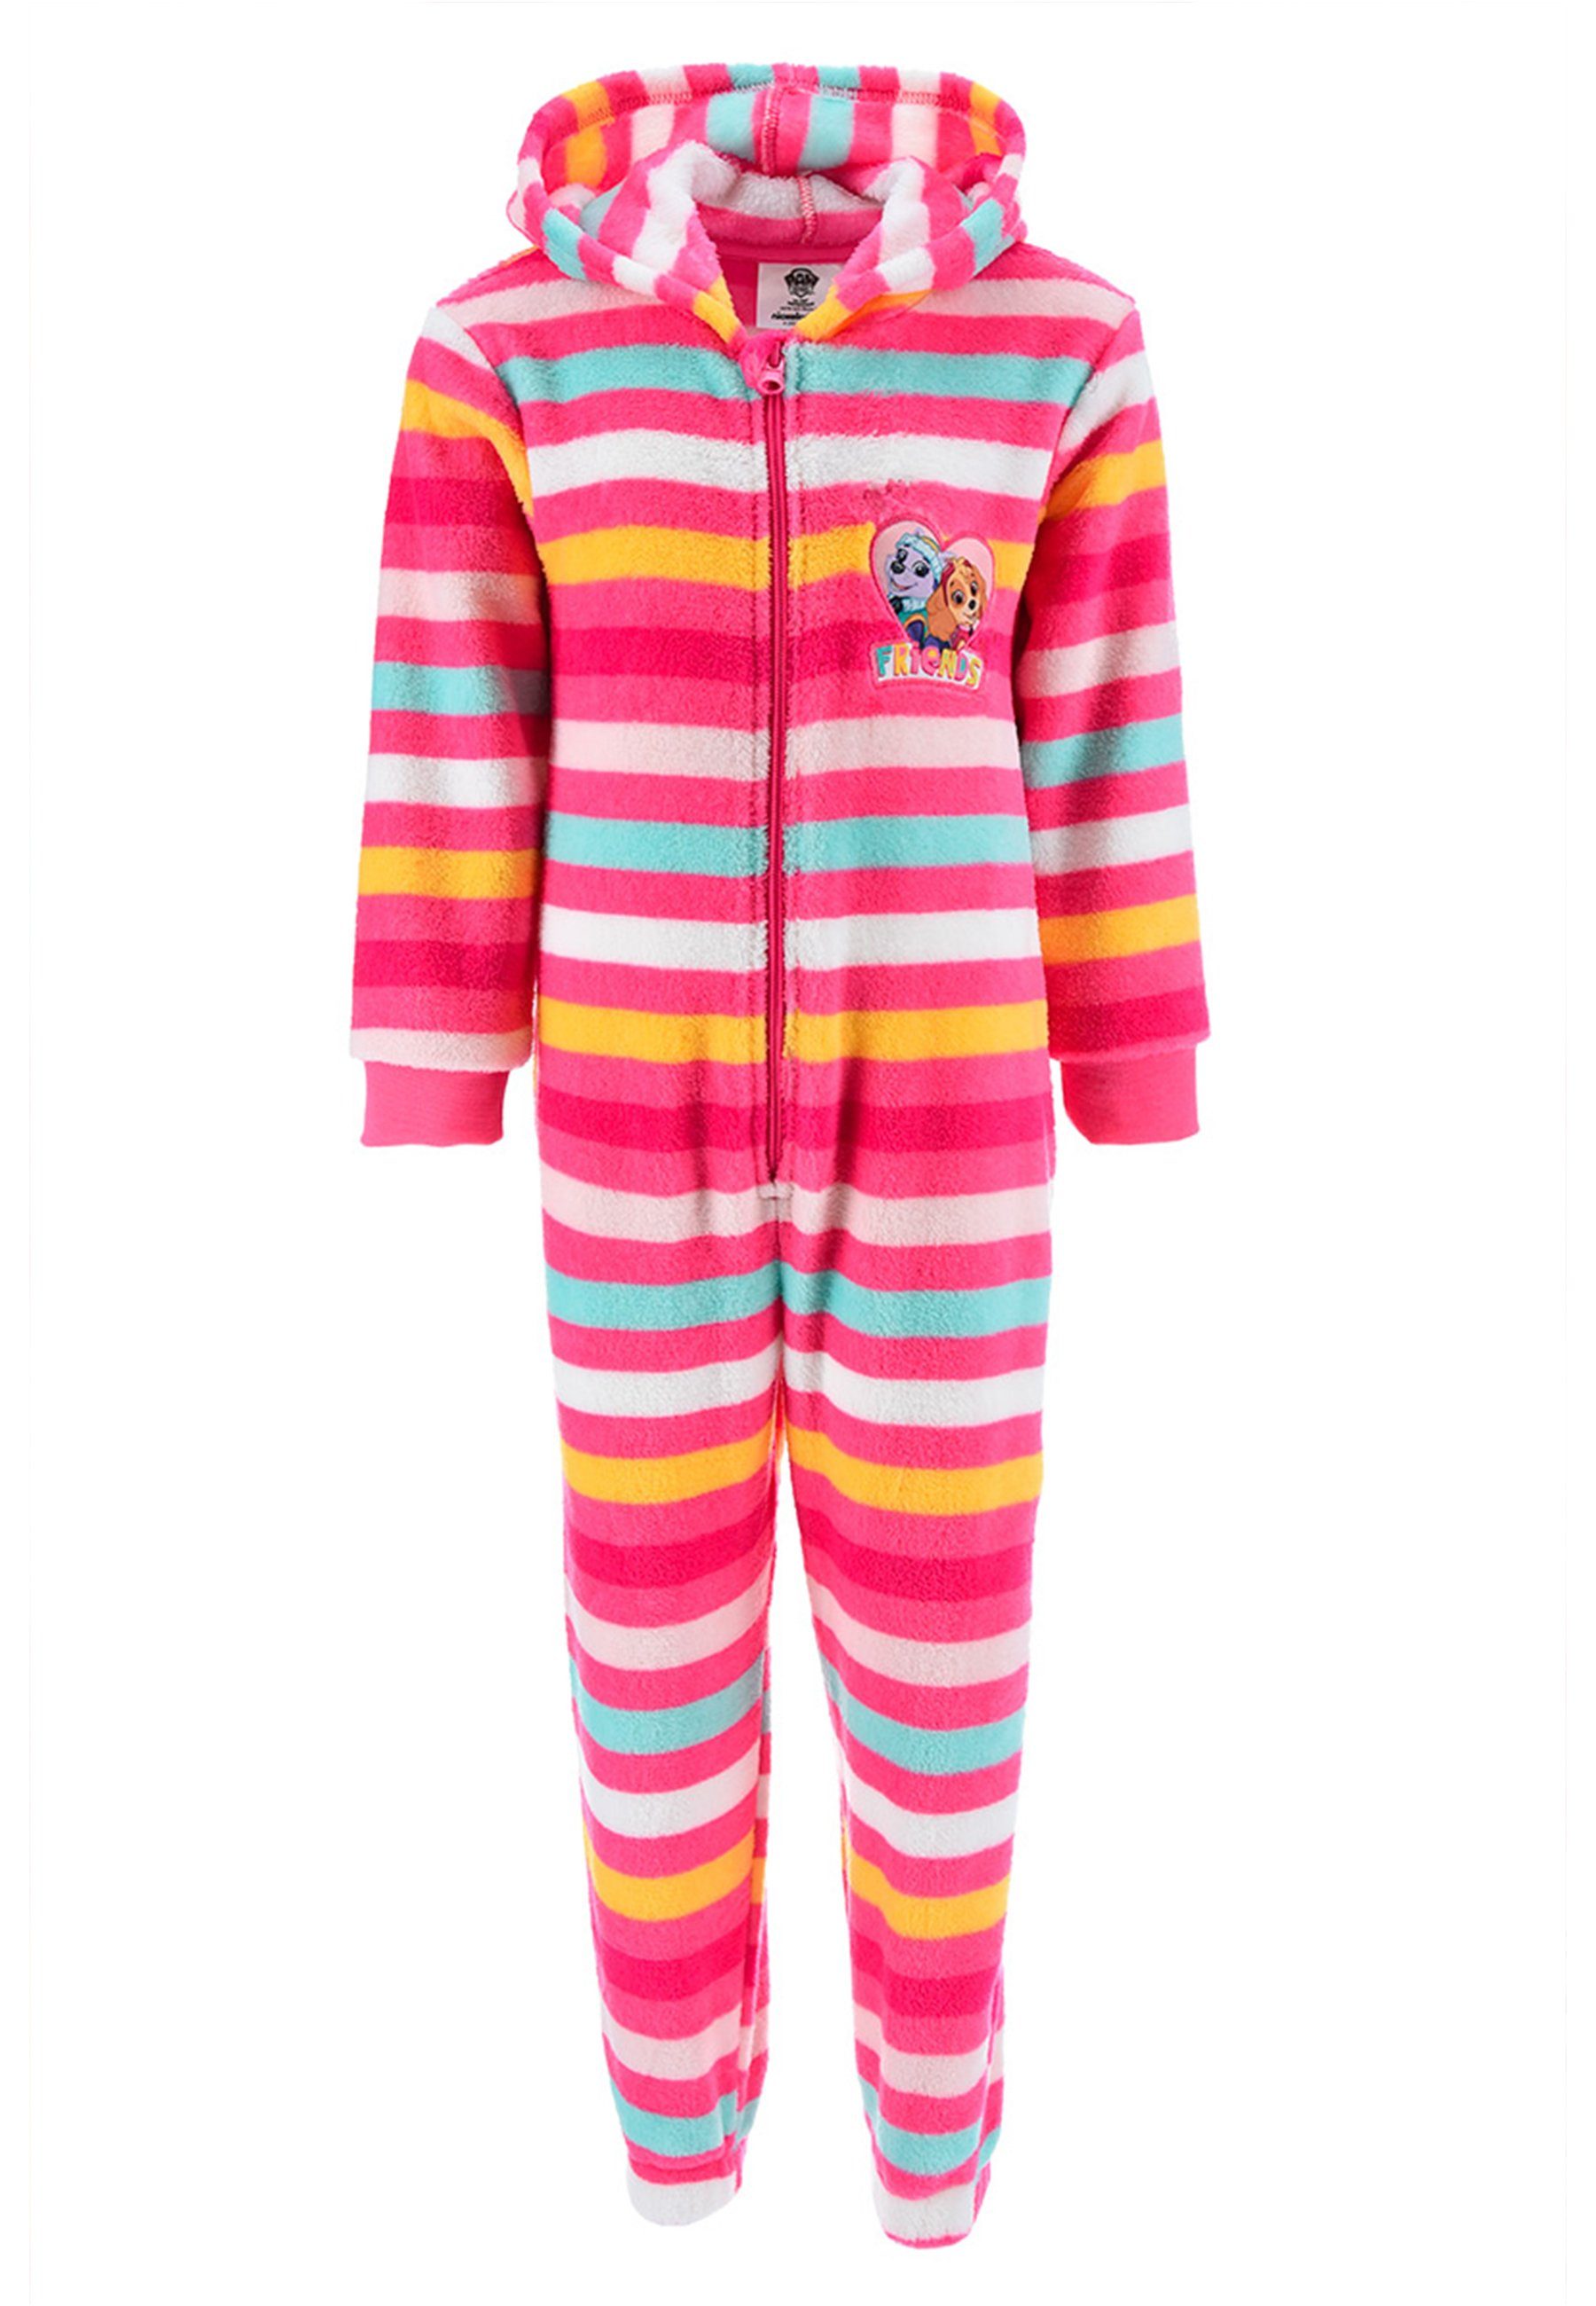 PAW PATROL Schlafanzug Skye Everest Schlaf Overall Pyjama langarm Nachtwäsche